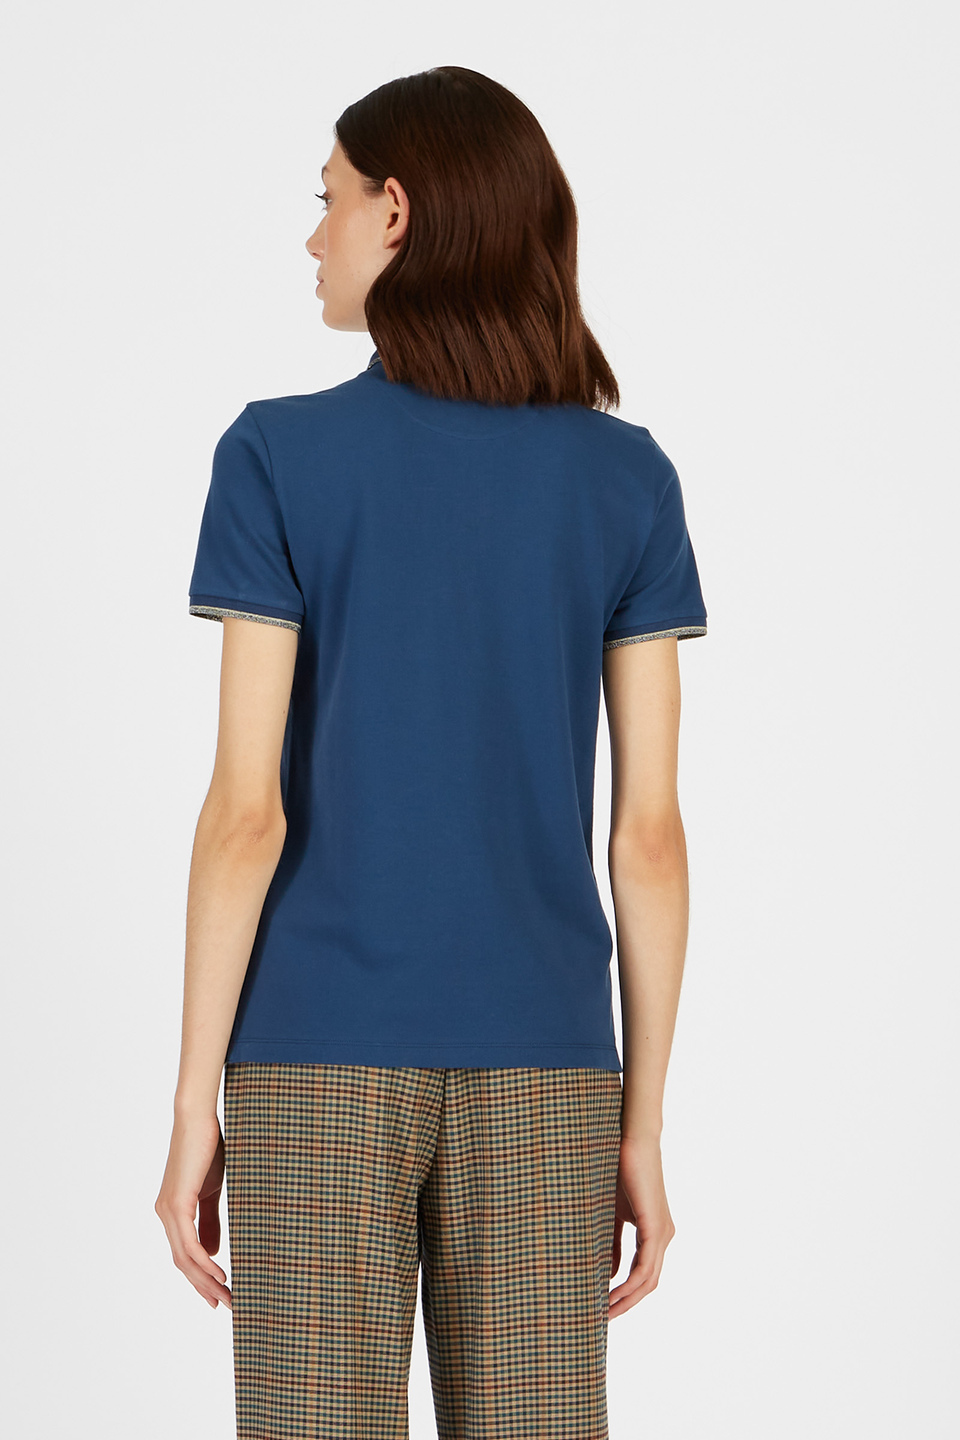 Damen-Poloshirt Timeless mit kurzen Ärmeln Regular Fit aus Piquet-Stretch | La Martina - Official Online Shop